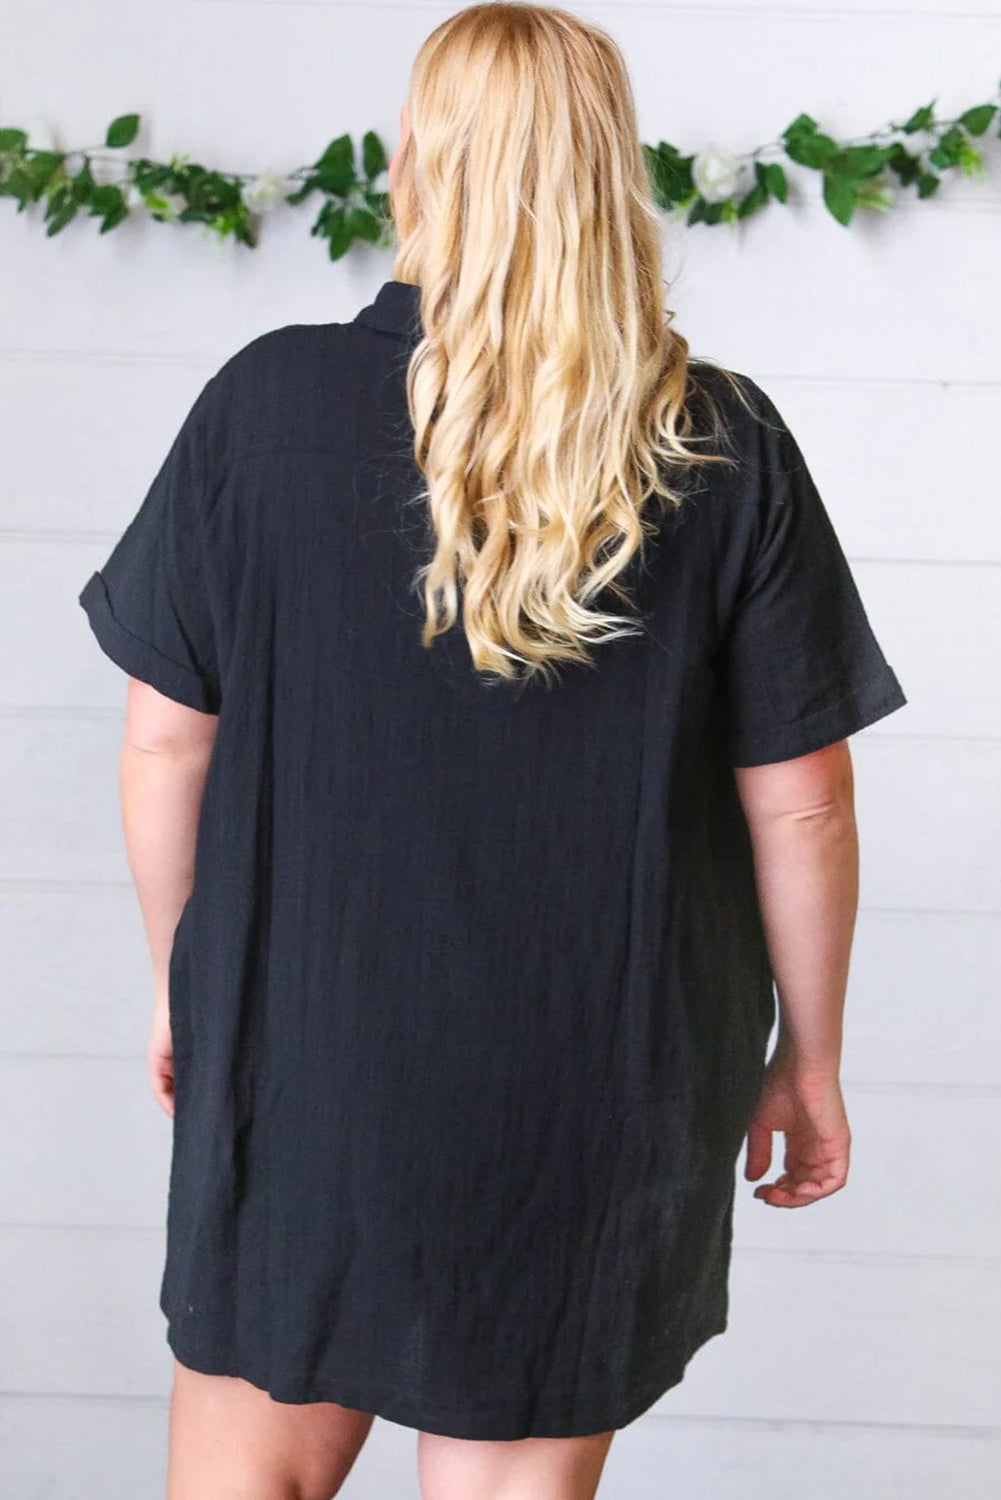 Schwarzes, kurzärmliges Etuikleid mit Hemdkragen und Knöpfen in Übergröße